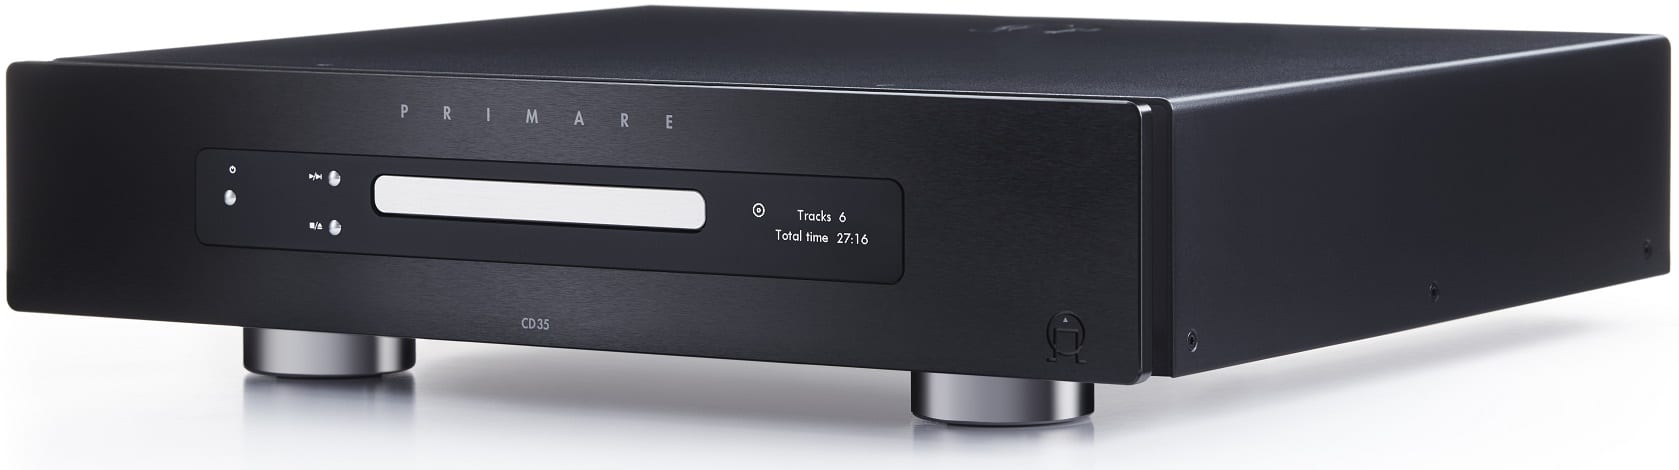 Primare CD35 zwart - zij frontaanzicht - CD speler